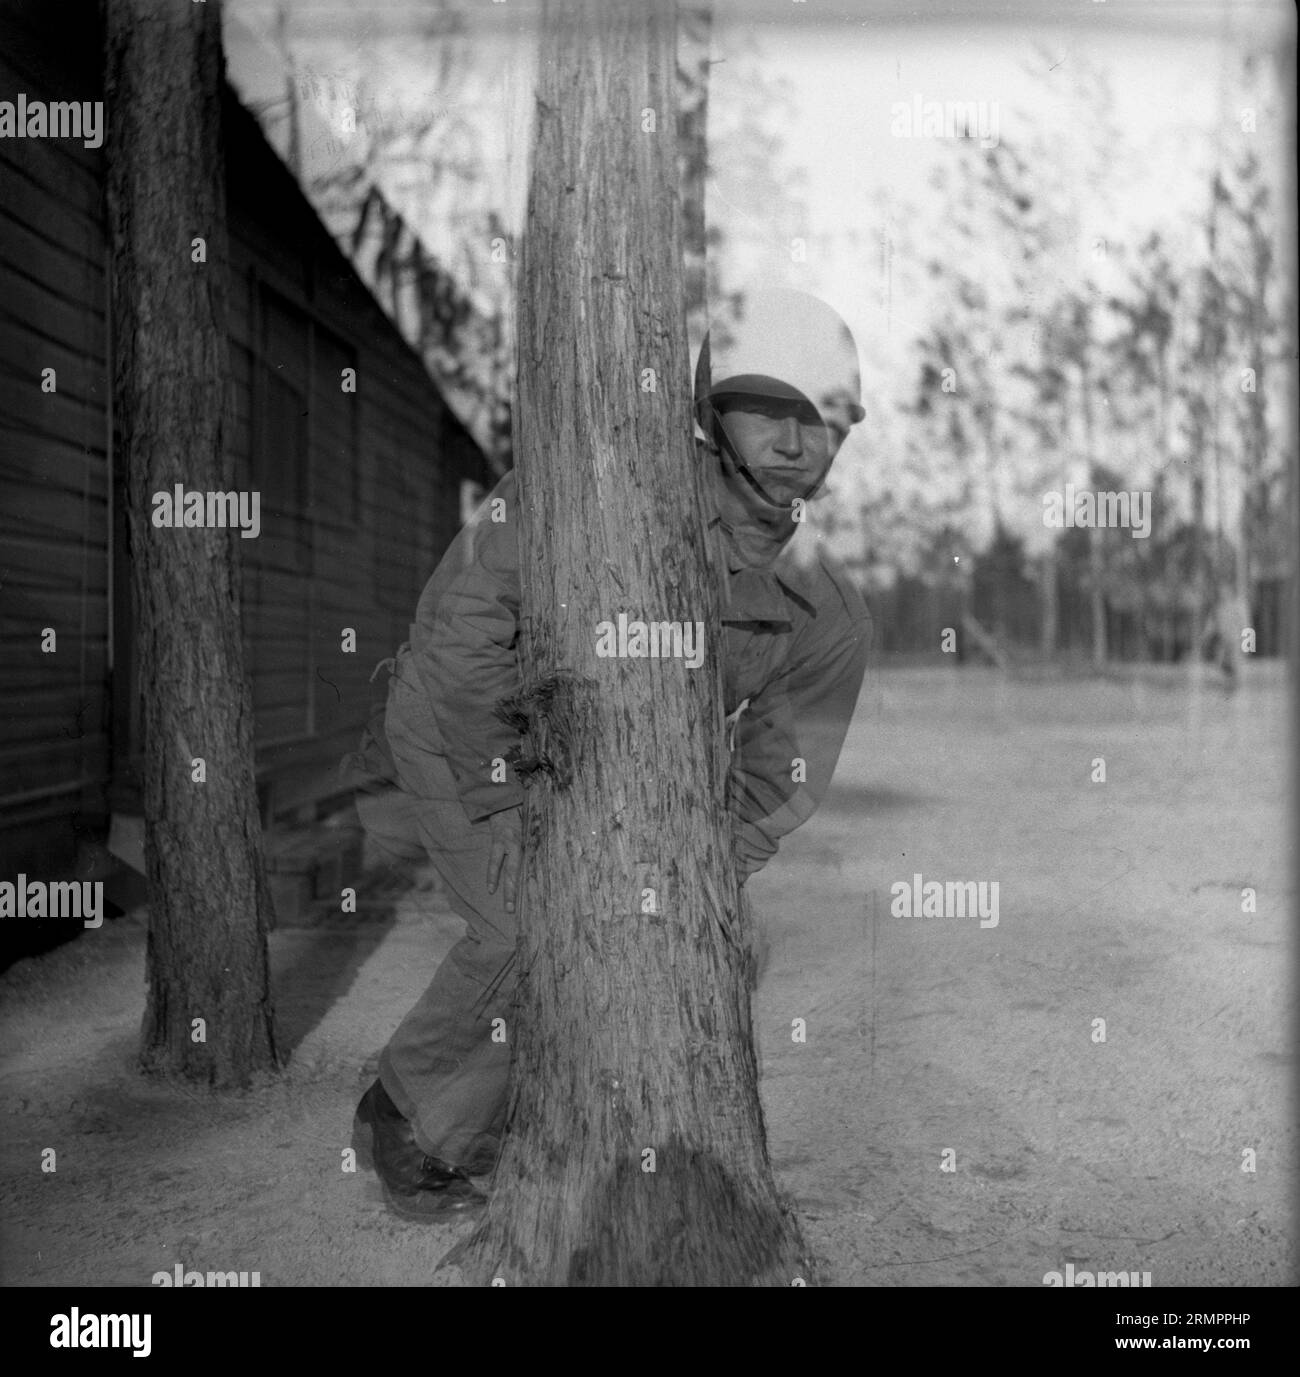 Doppelbelichtungsbild des Soldaten, der mit dem Fotografen Versteck spielt. Mitglieder der 114. Infanteriedivision der US-Armee trainieren im Zweiten Weltkrieg gegen Deutschland in Europa. Stockfoto